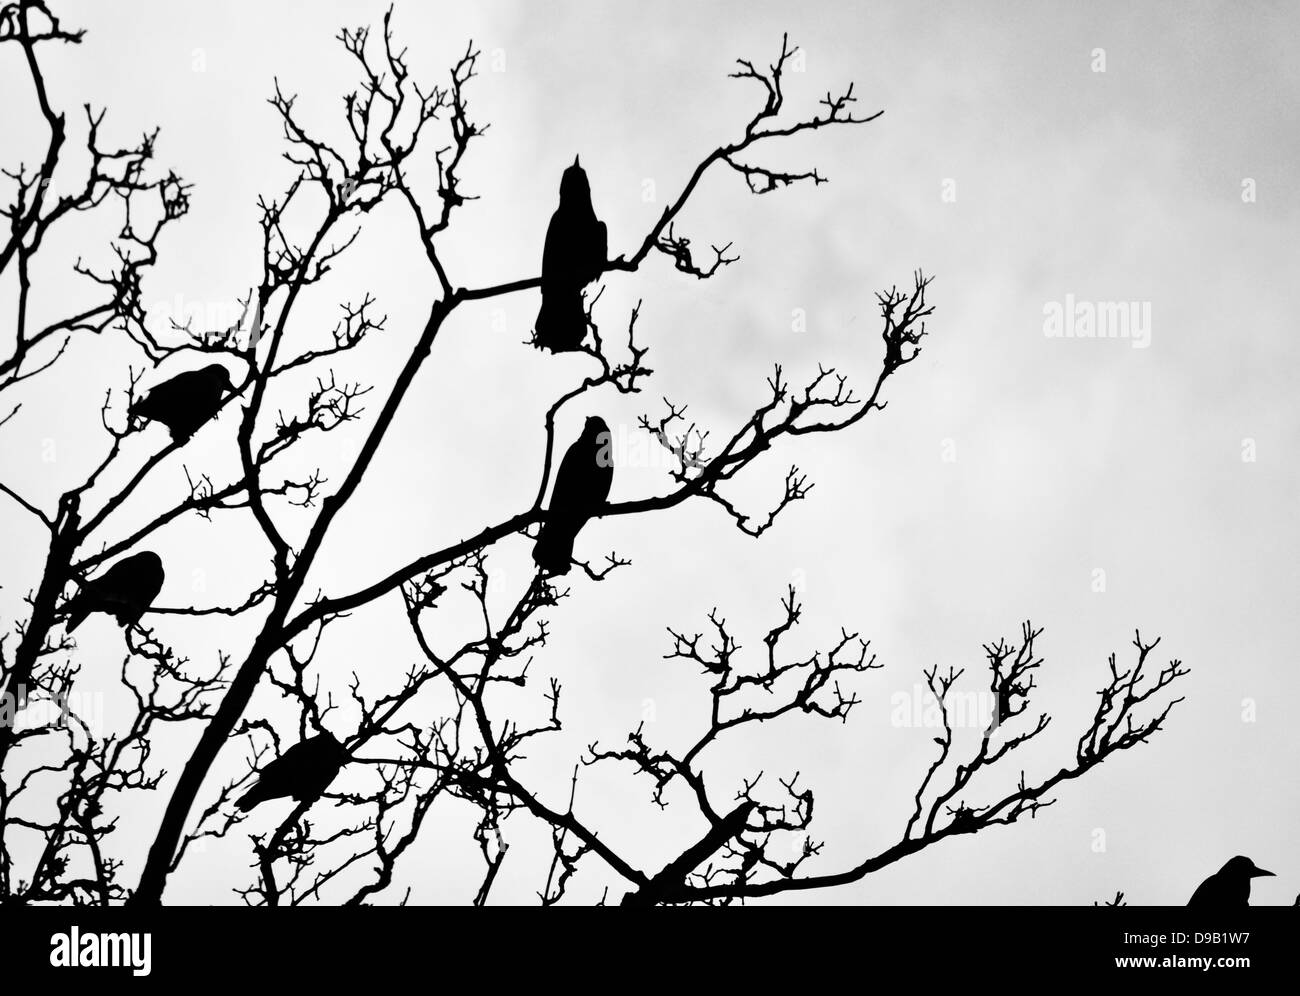 Crow Birds In Tree Stock Photo